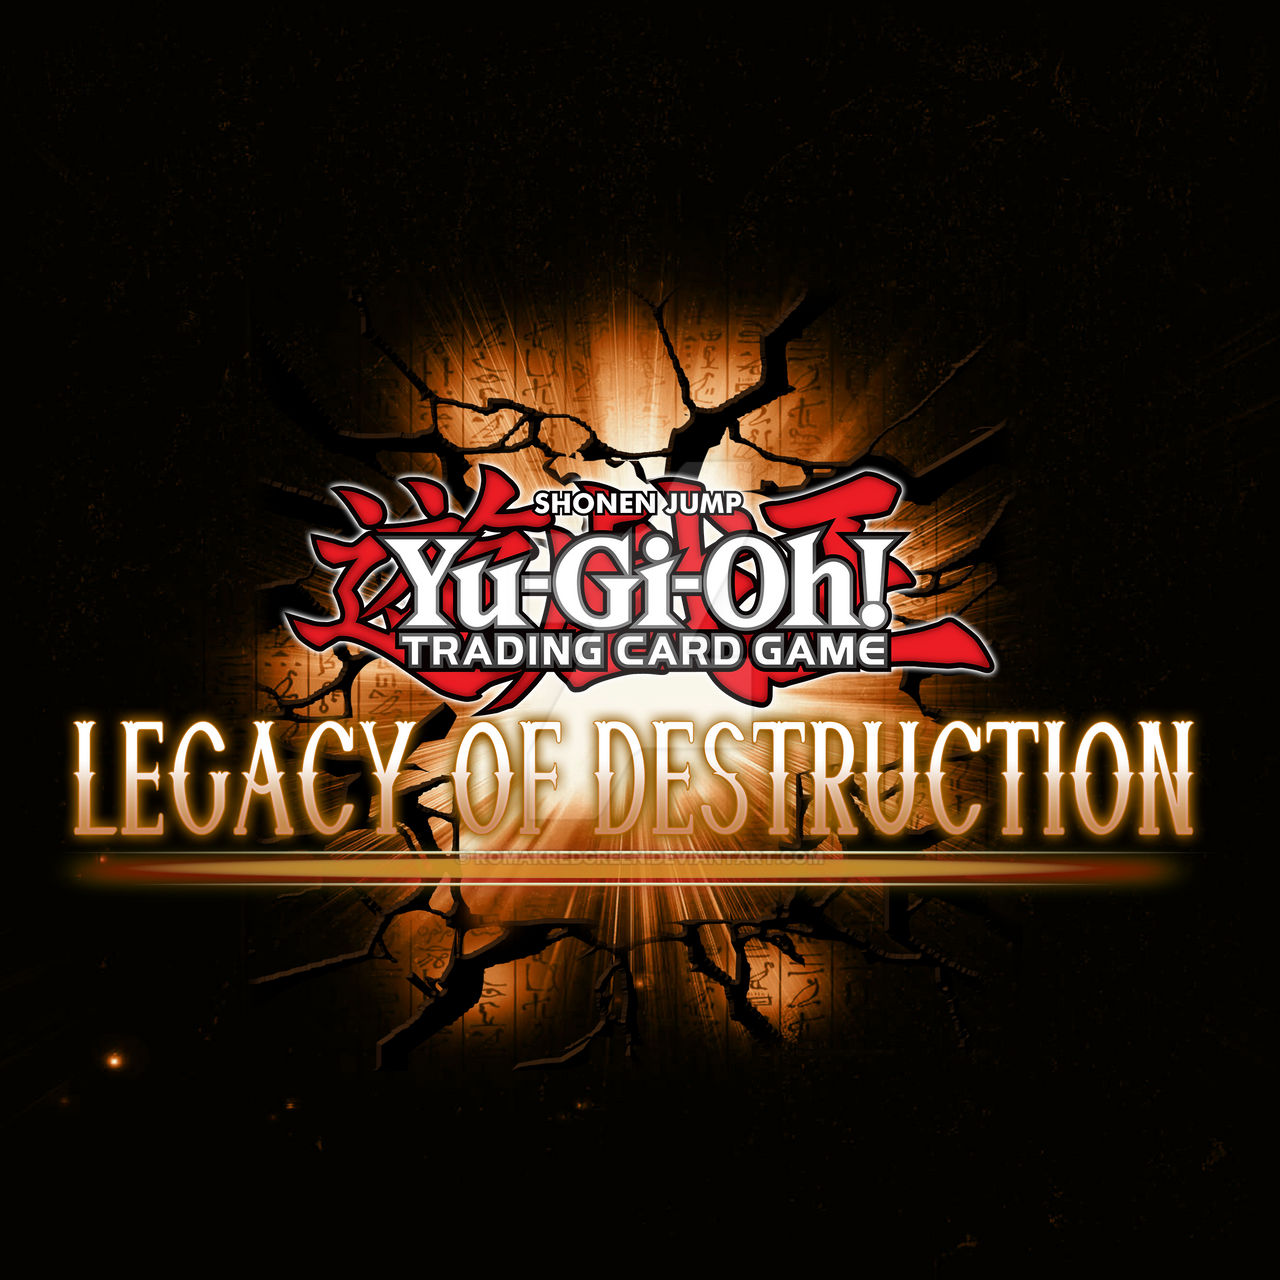  Novo filme da série Yu-Gi-Oh! chega ao Brasil